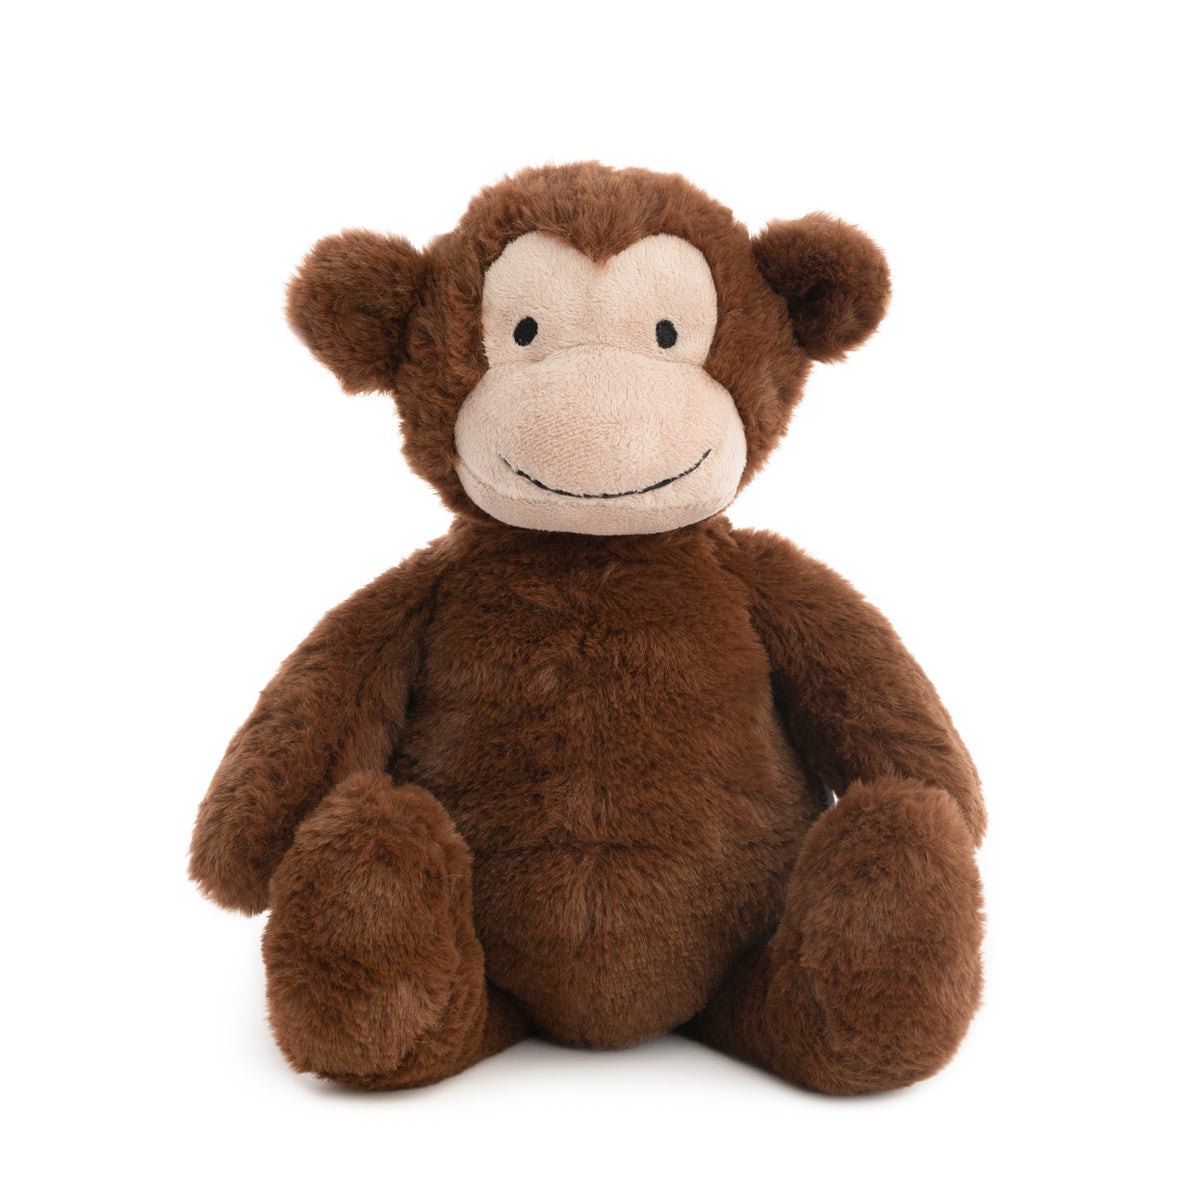 natureZoo XL Plush Teddy Bear – Brown Monkey